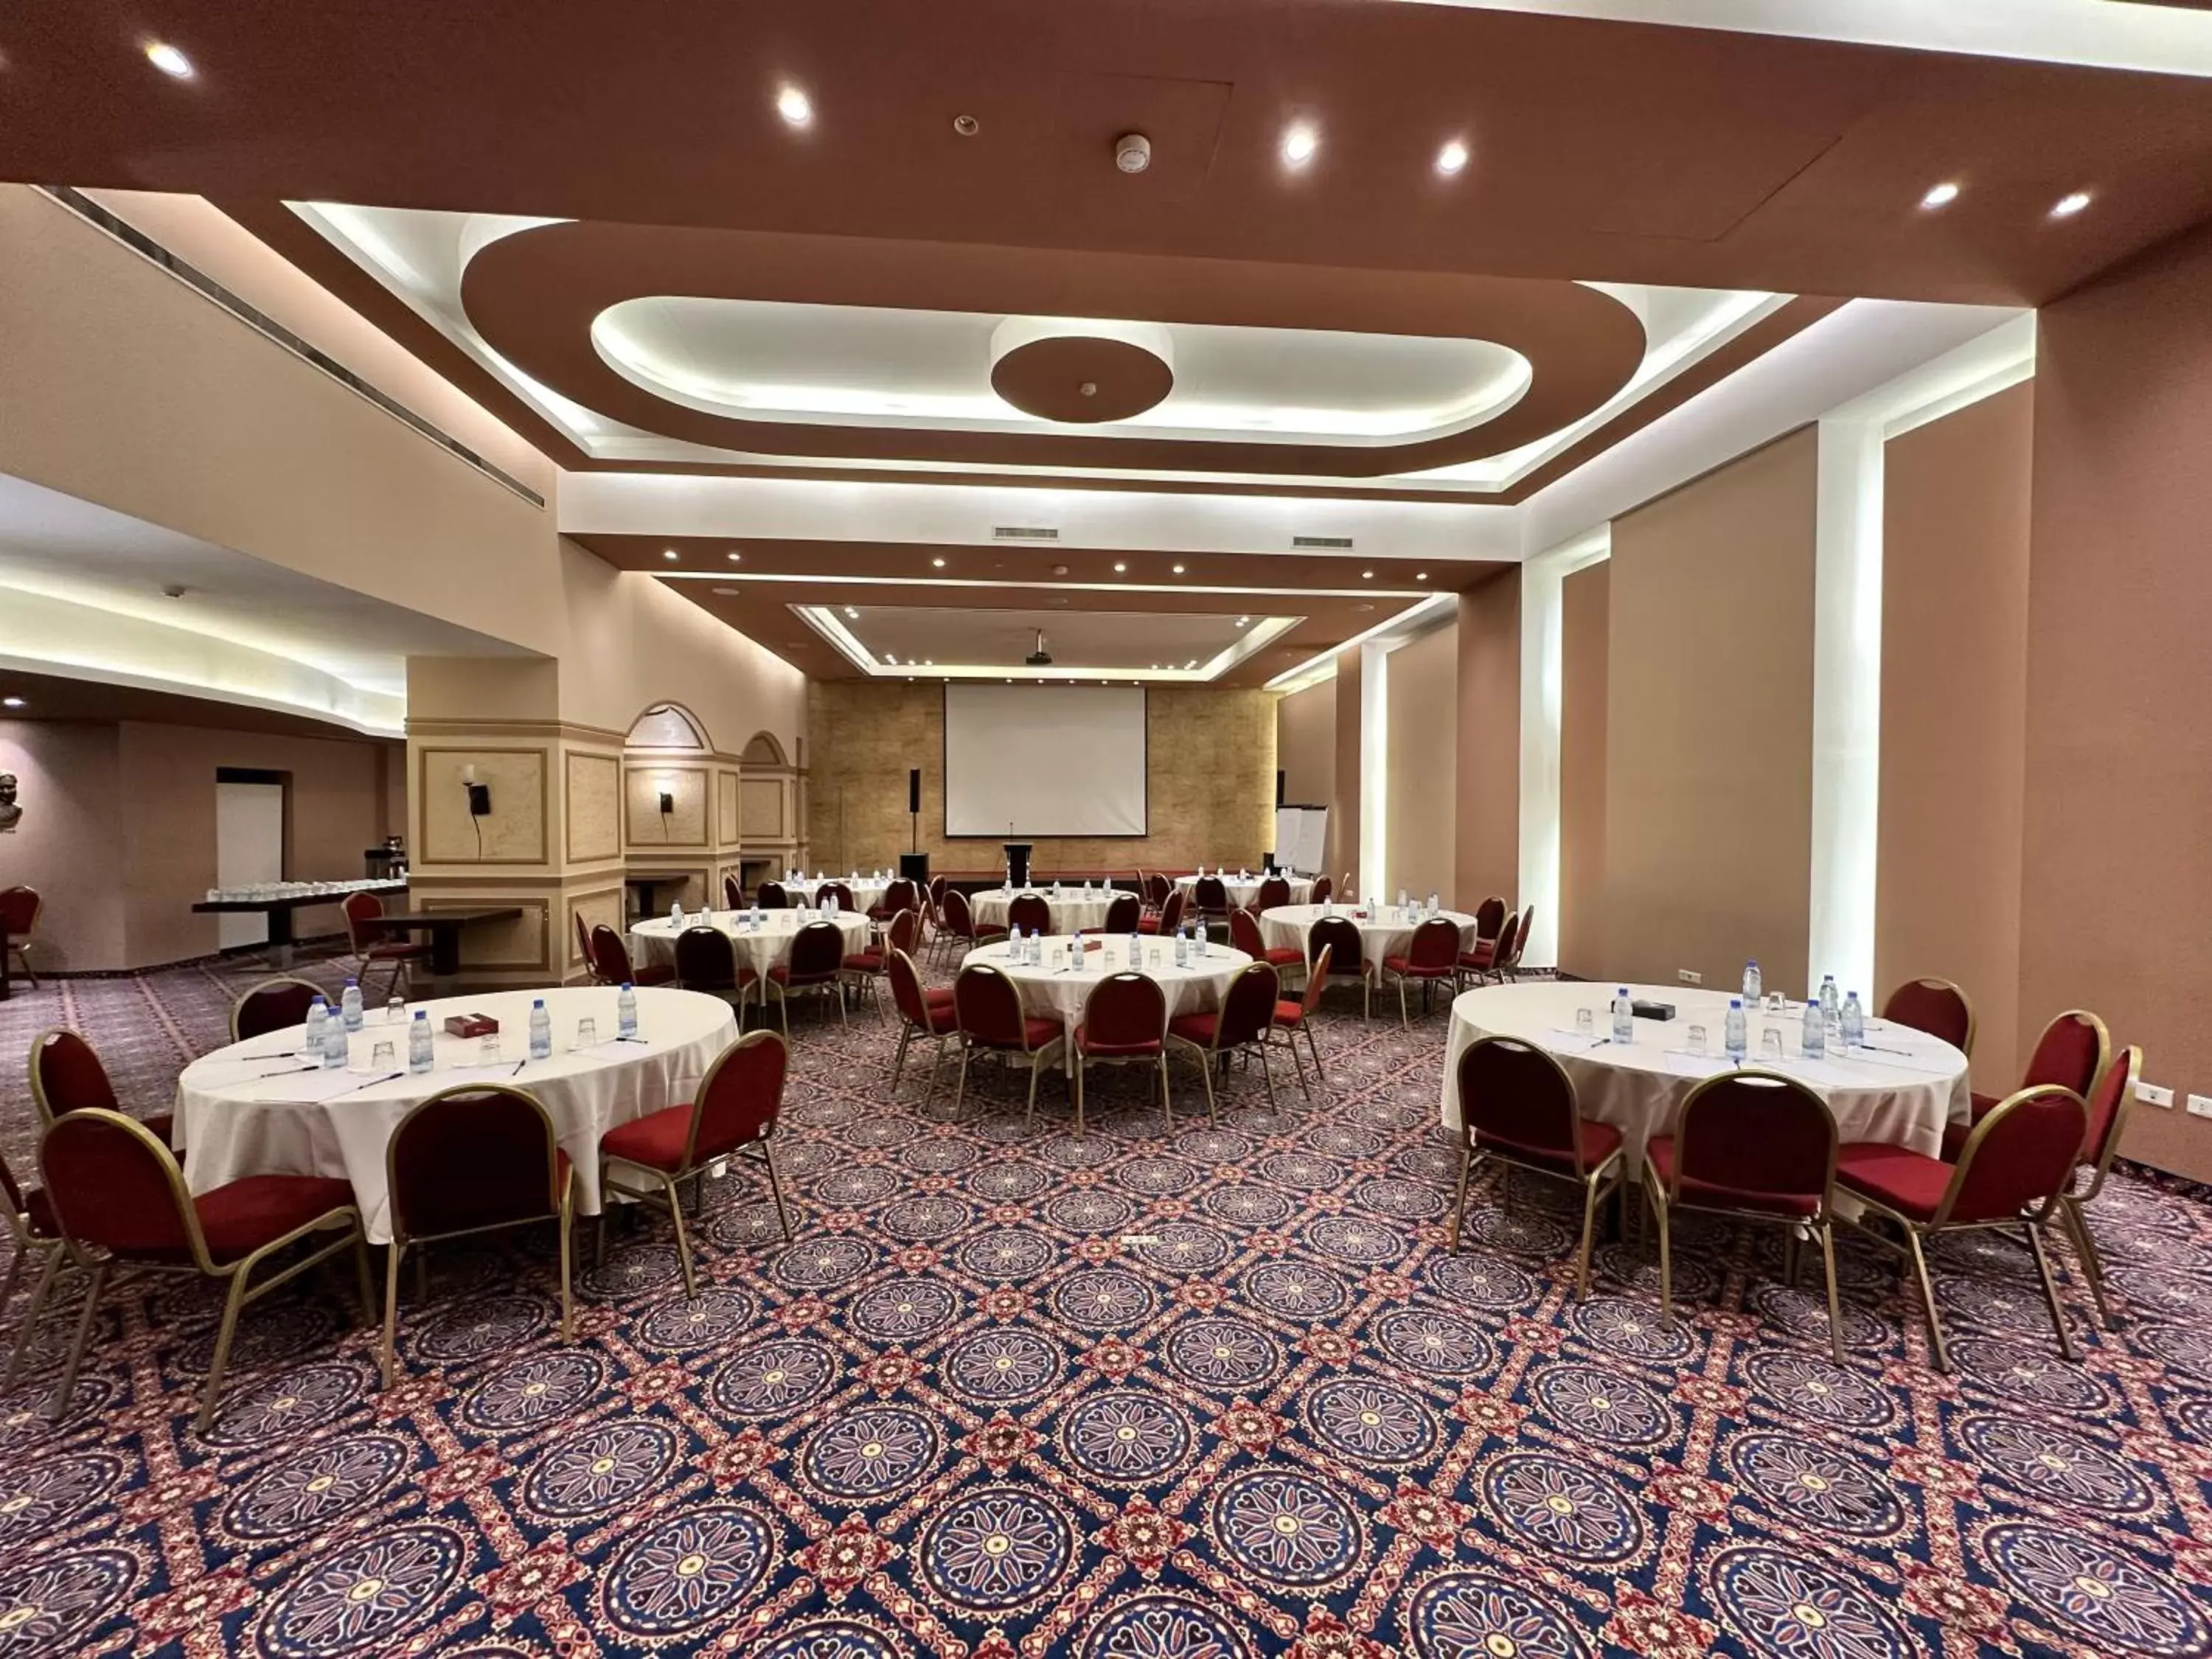 Banquet/Function facilities, Banquet Facilities in Padova Hotel